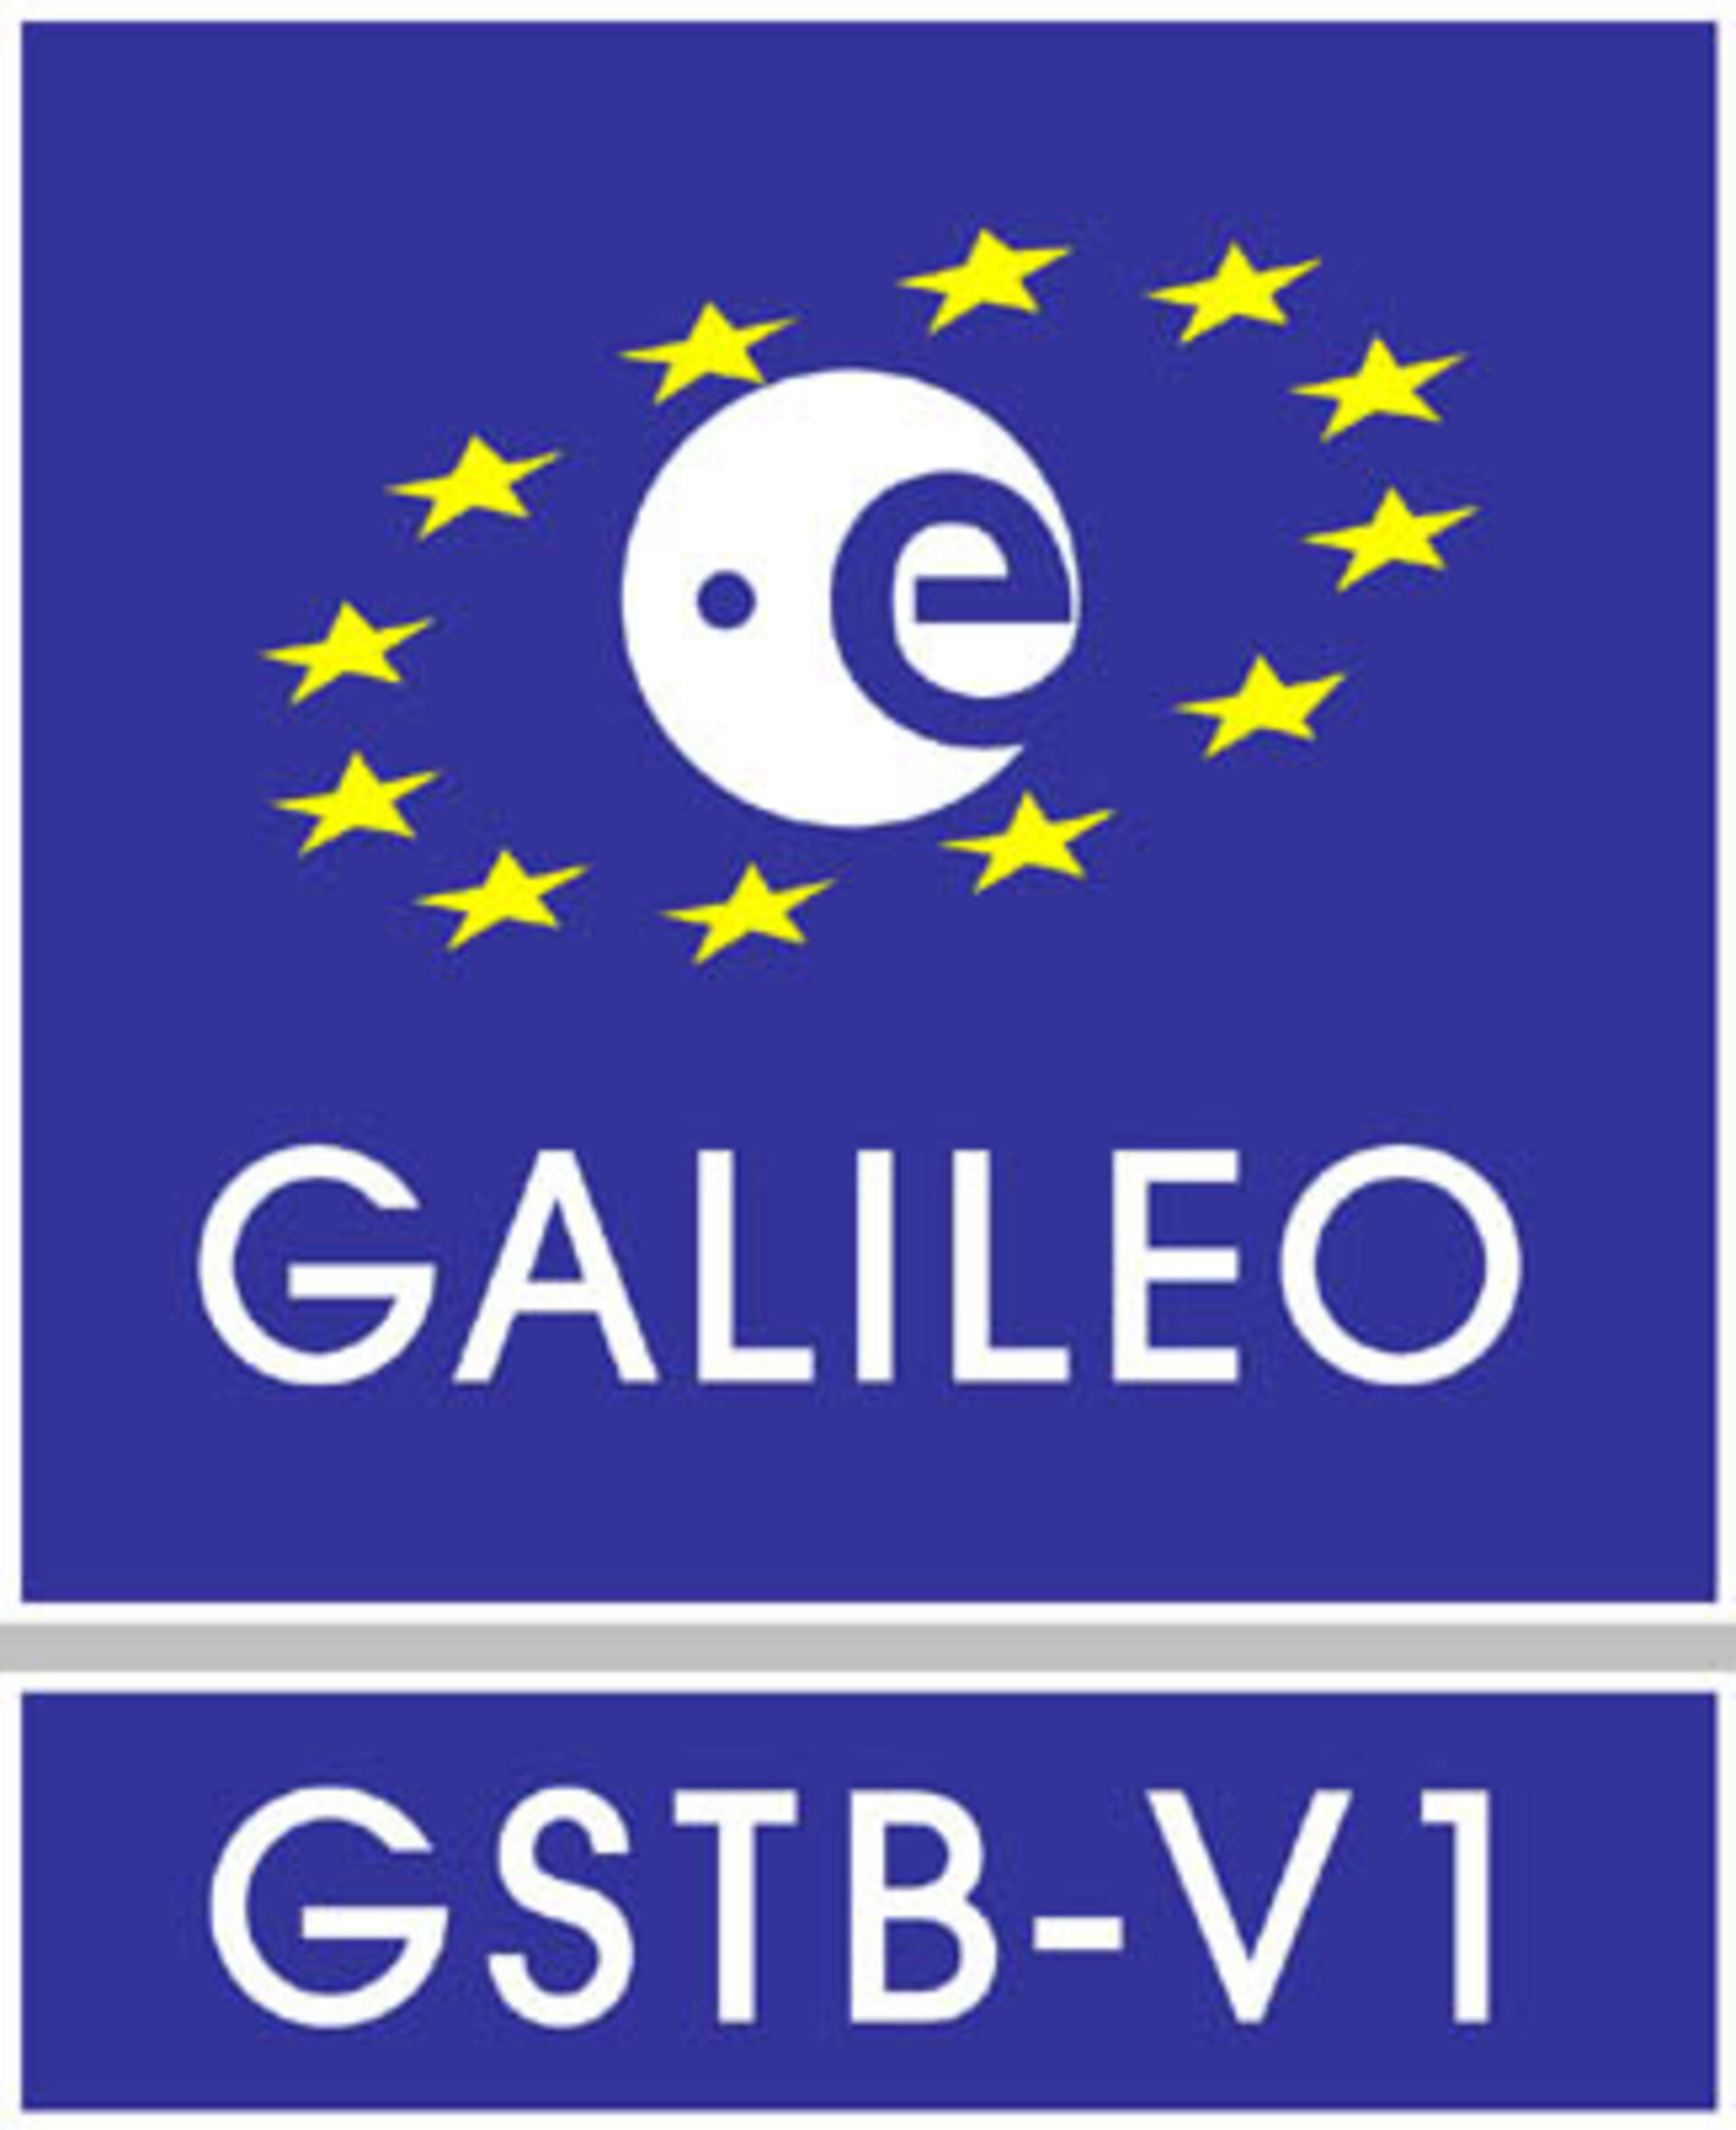 Galileo System Test Bed (GSTB-V1)